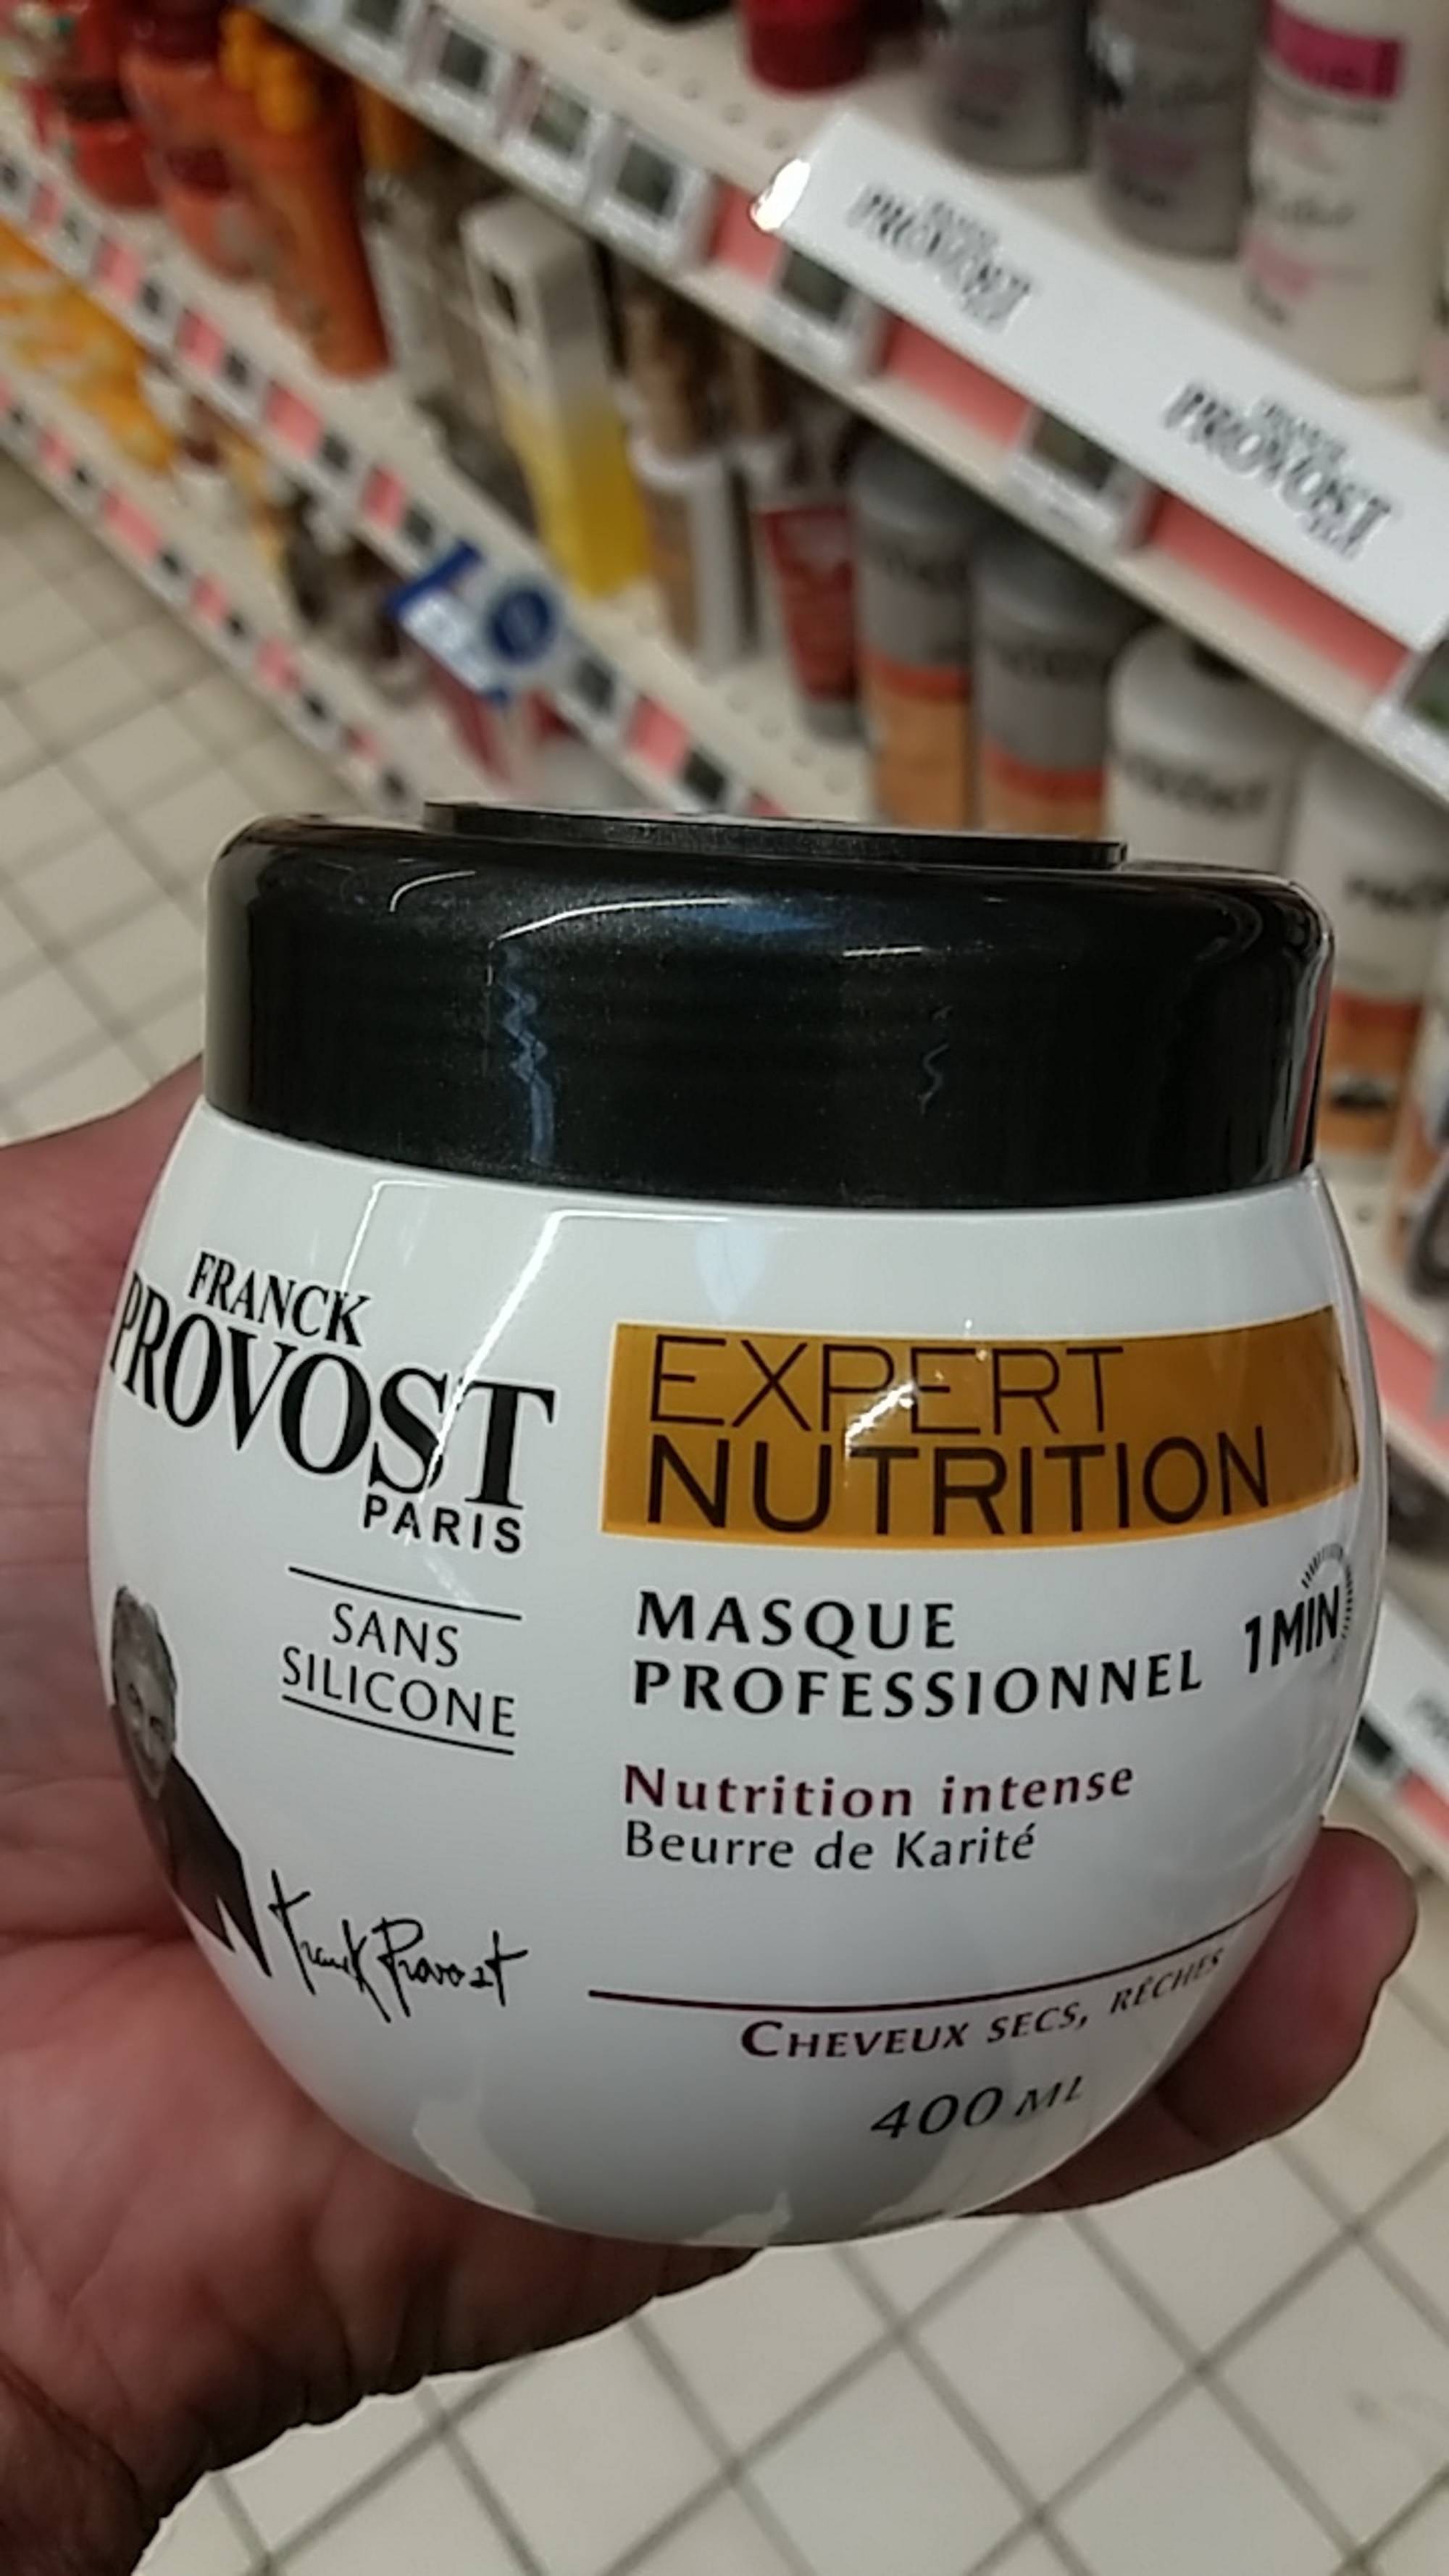 FRANCK PROVOST - Expert nutrition - Masque professionnel cheveux secs